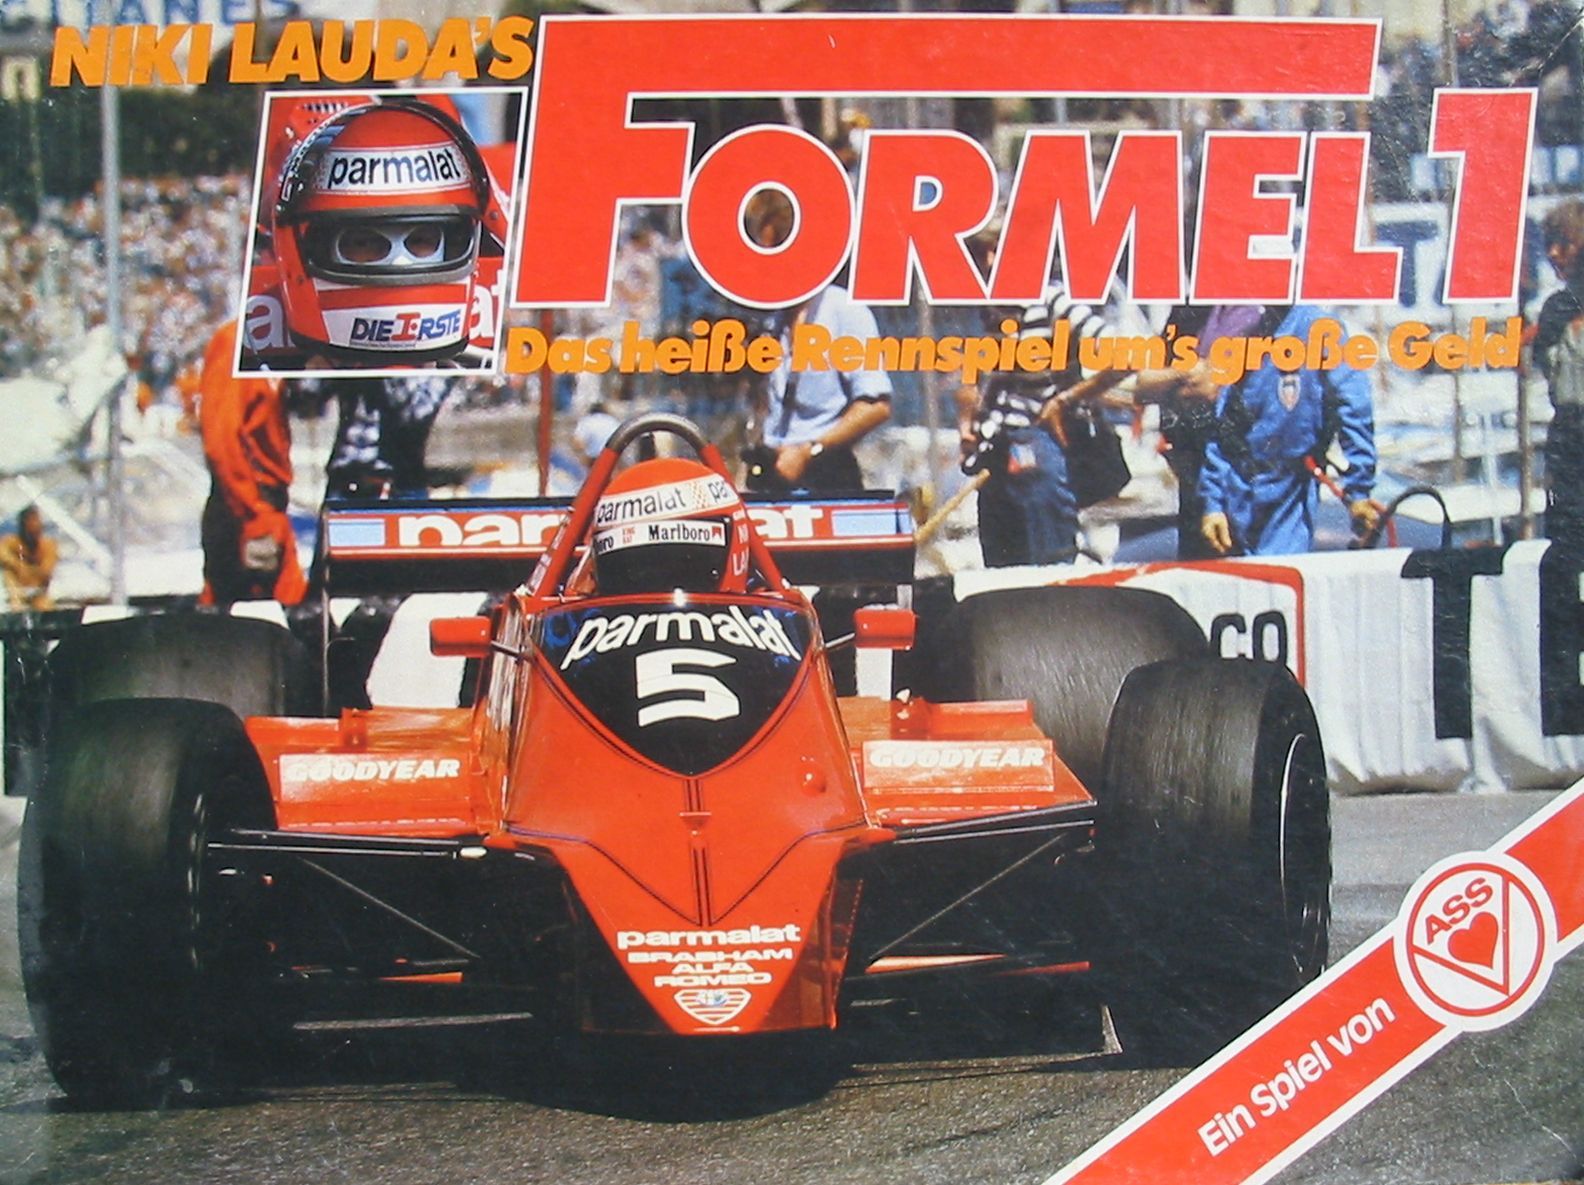 Niki Lauda's Formel 1